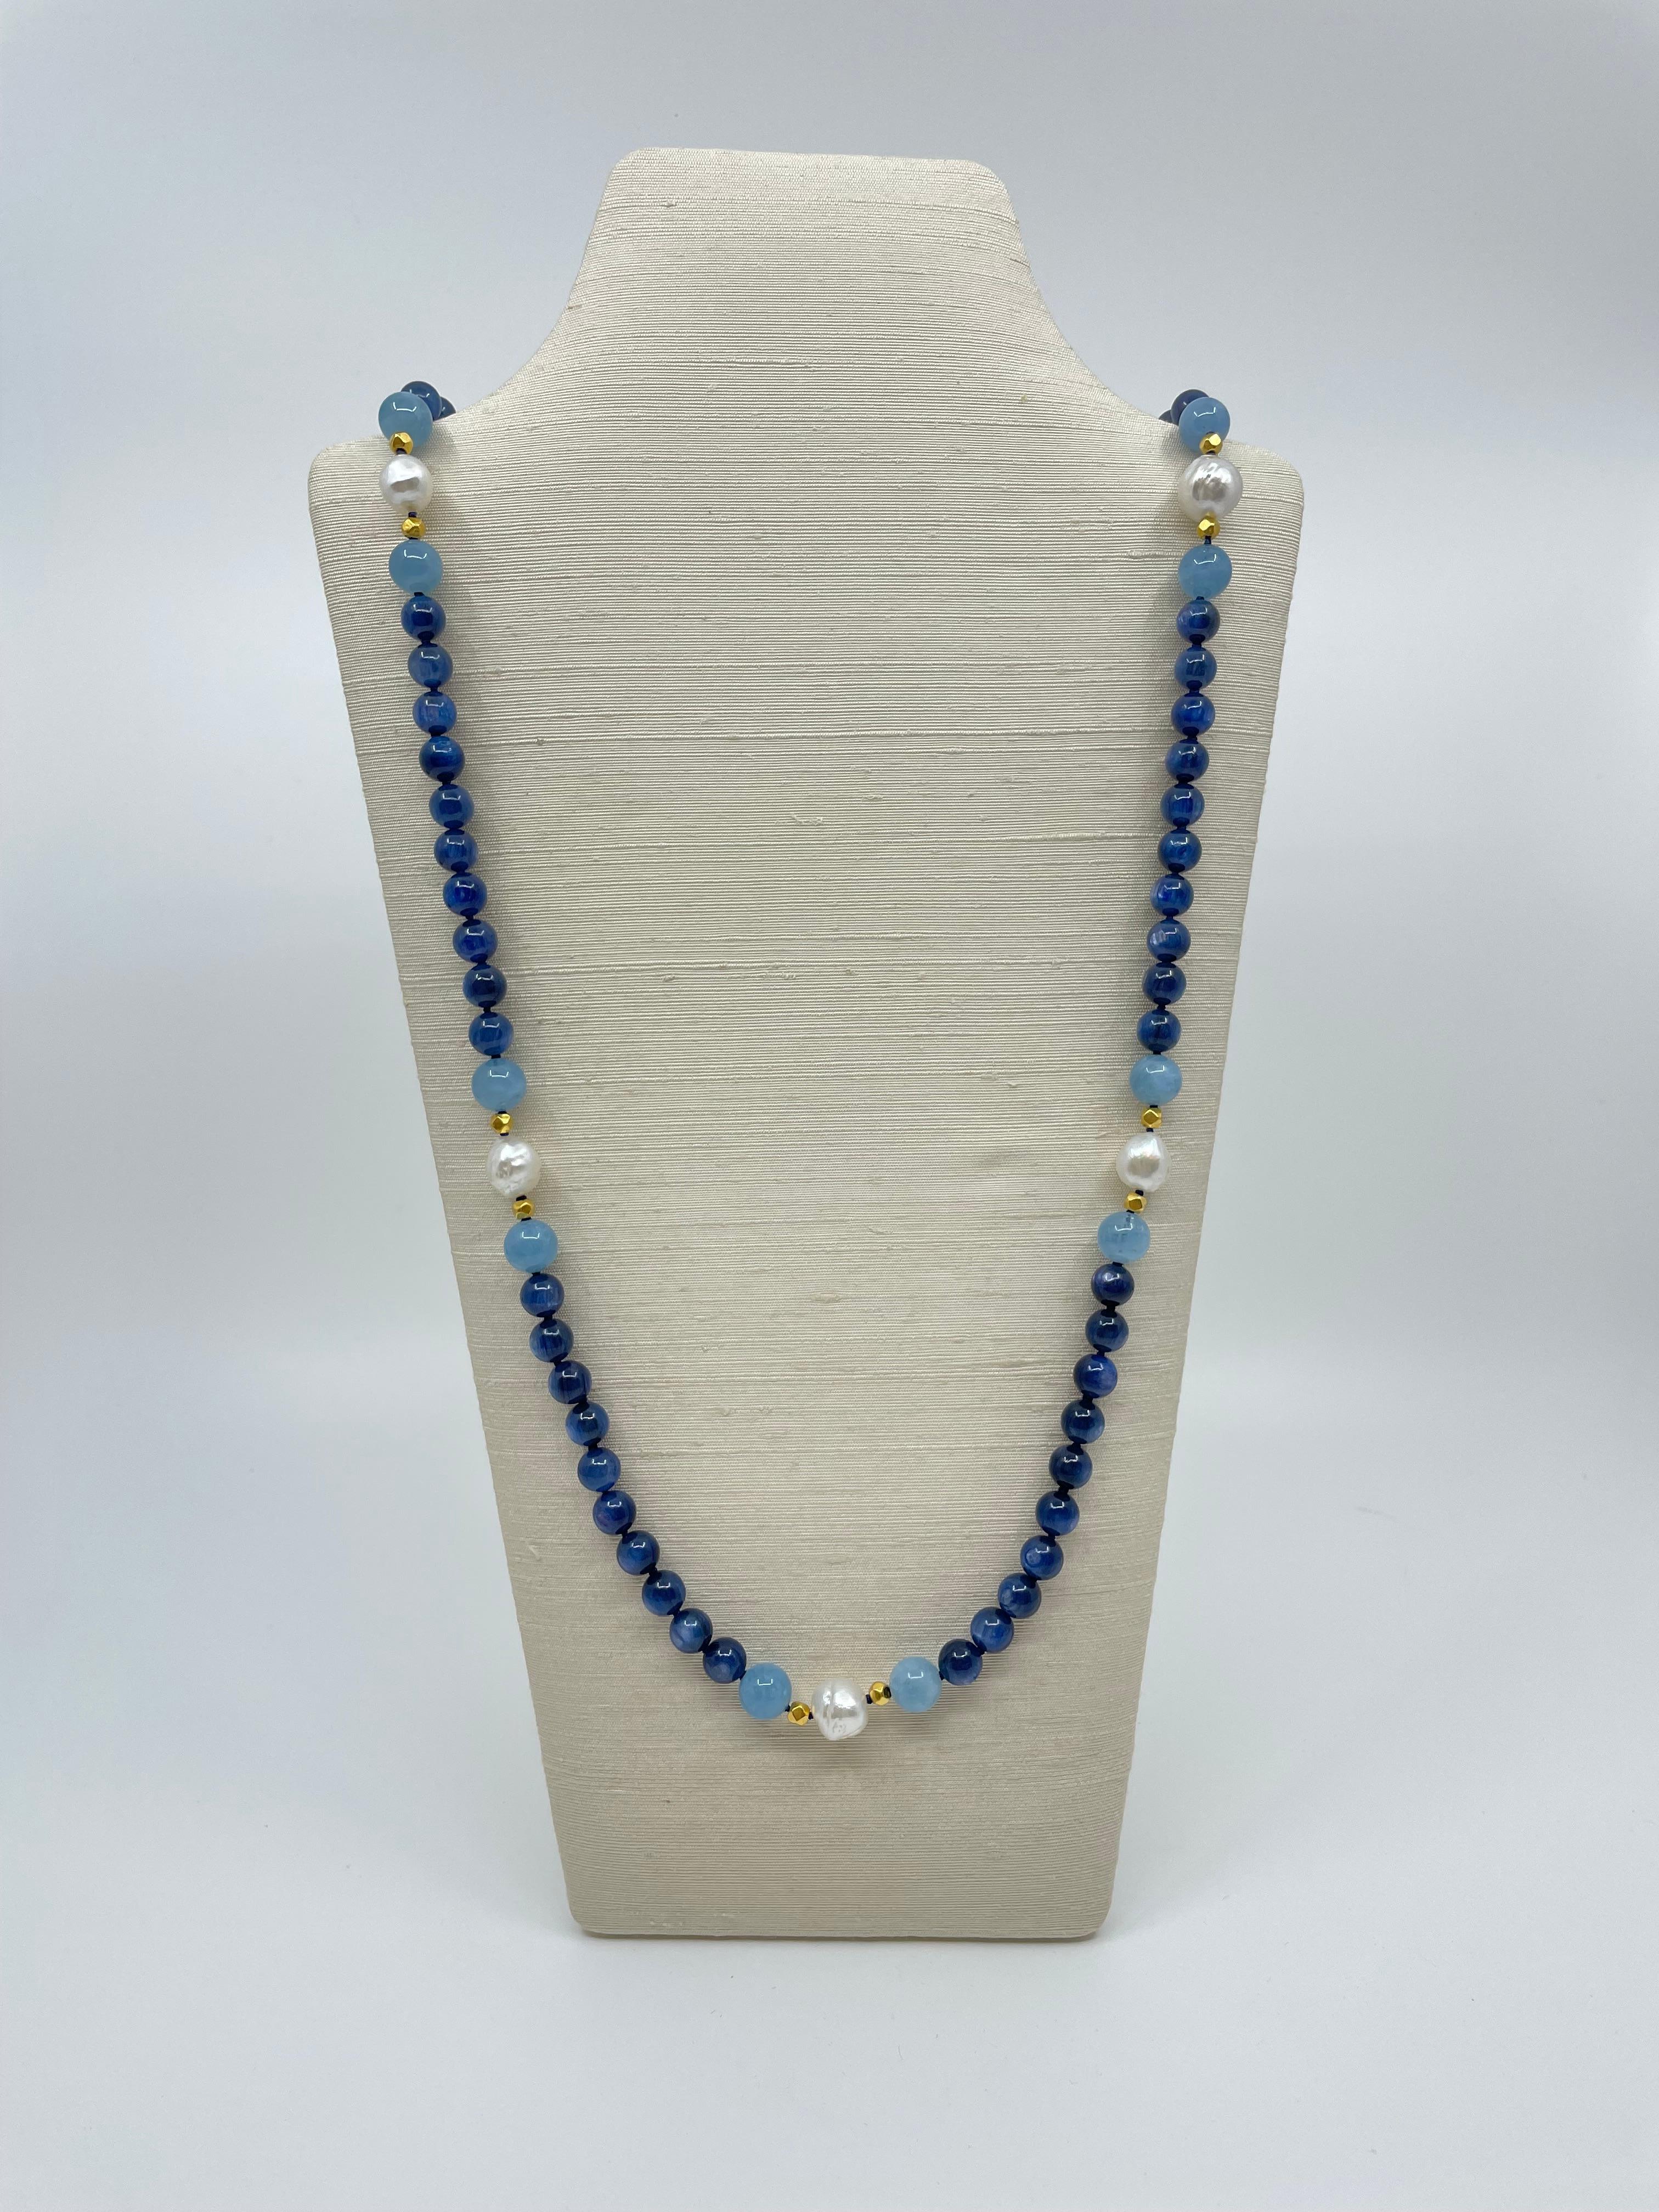 Issu de notre collection Amalfi, ce fabuleux collier est fabriqué à la main avec des perles de cyanite bleue vibrante, entrecoupées de six groupes de perles d'aigue-marine bleue douce et de perles d'or massif 18K avec une perle des mers du Sud au